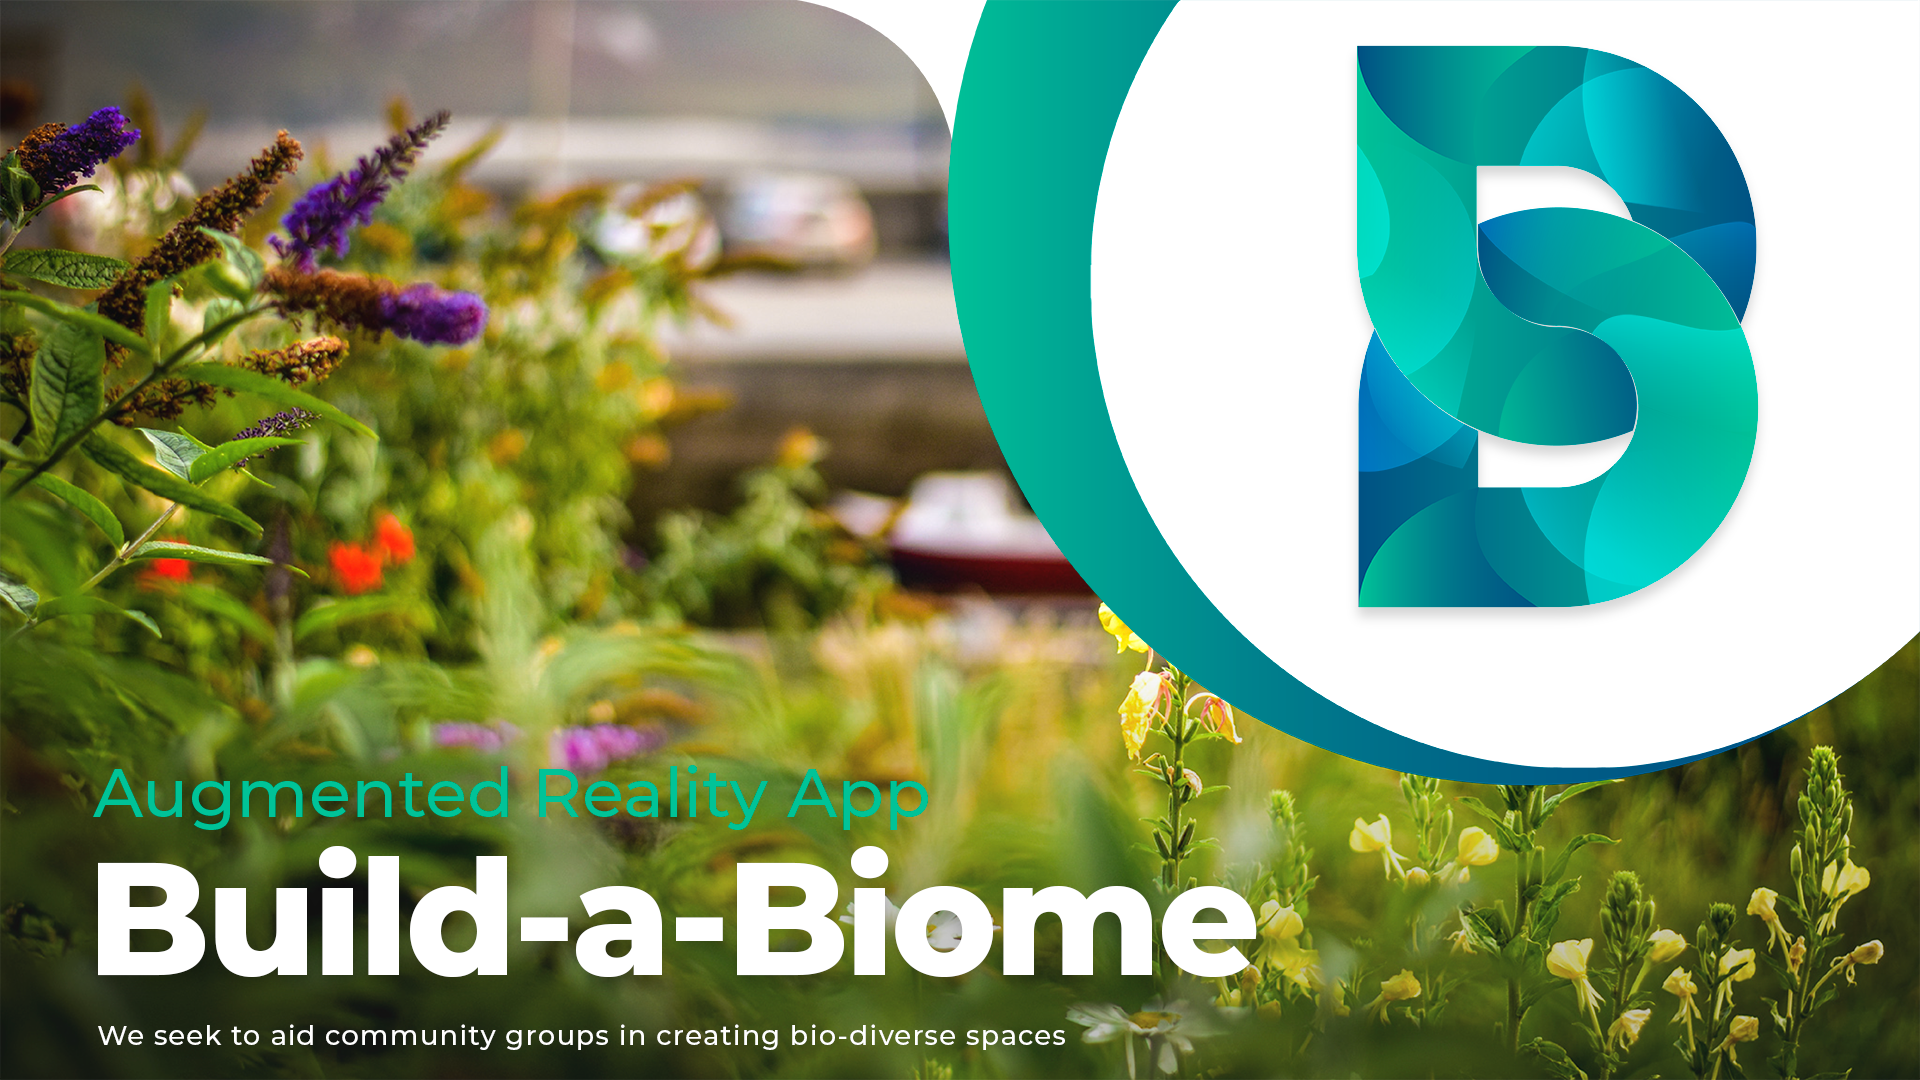 Build-a-Biome